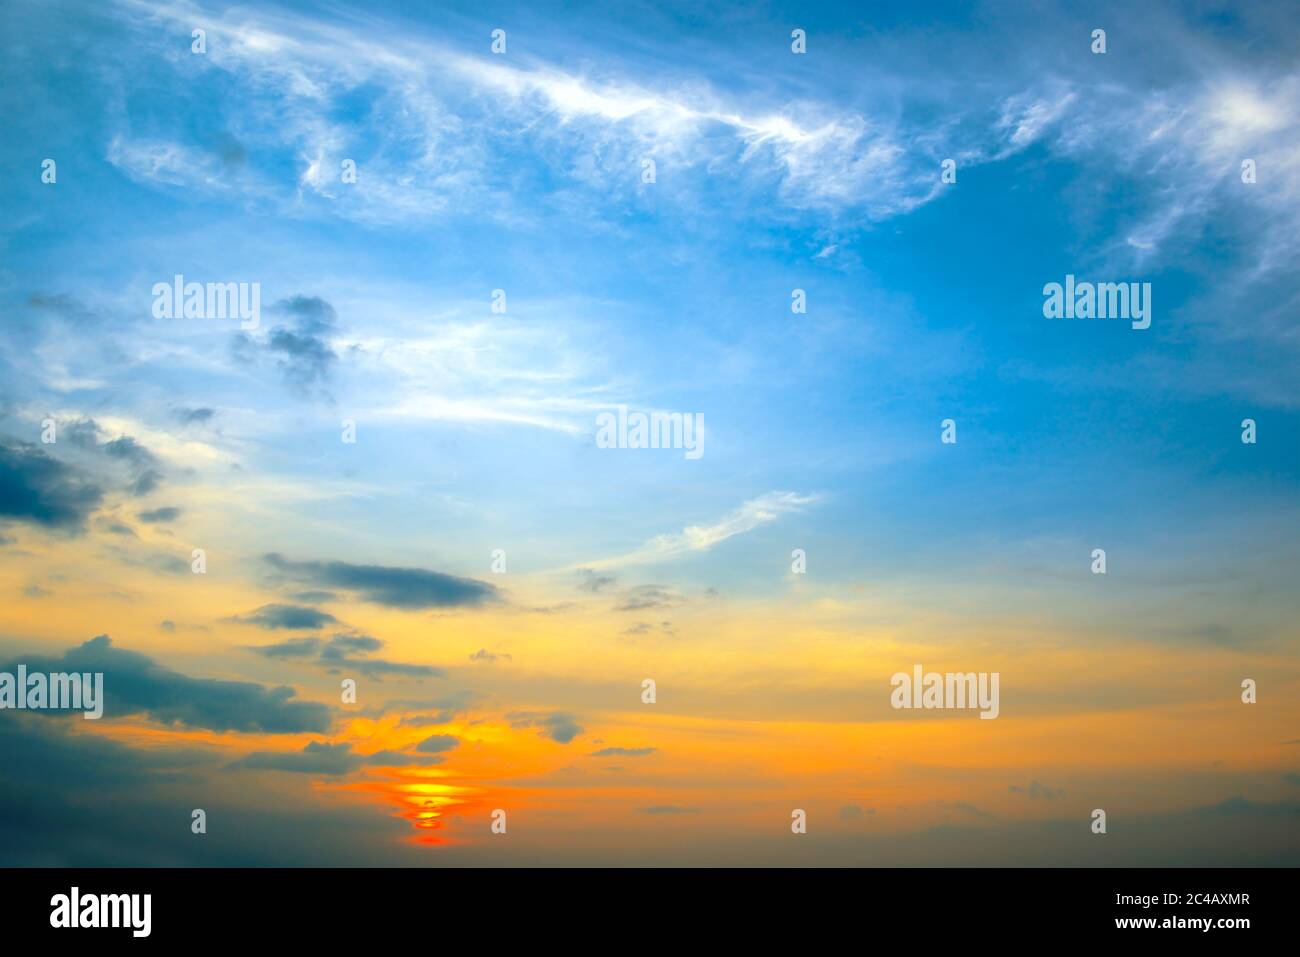 Panorama photo printemps coucher de soleil avec ciel bleu, nuages blancs et soleil rouge. Banque D'Images